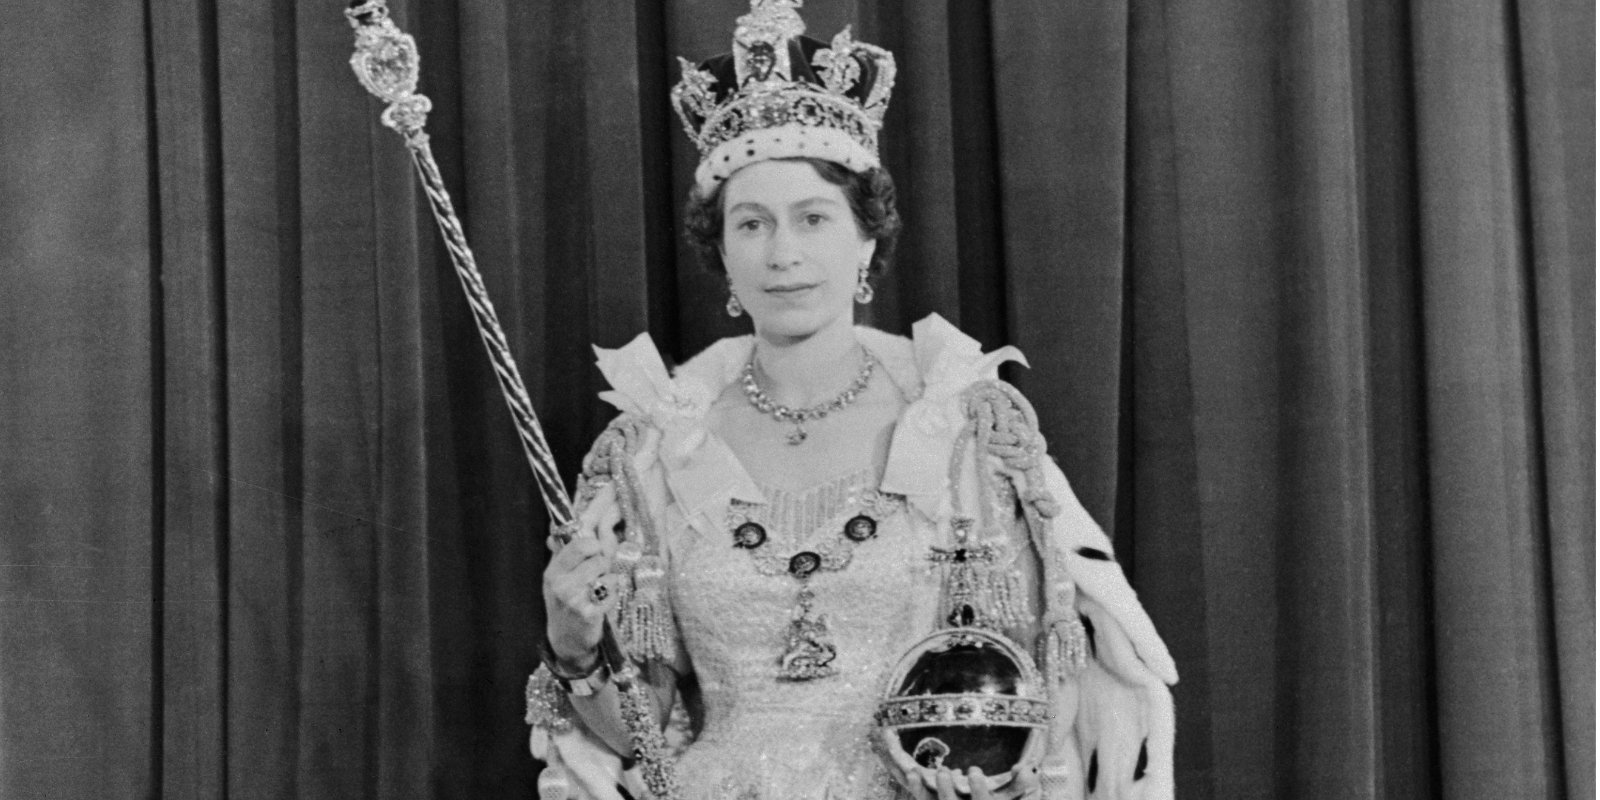 Queen Elizabeth II poses at her coronation in 1952.